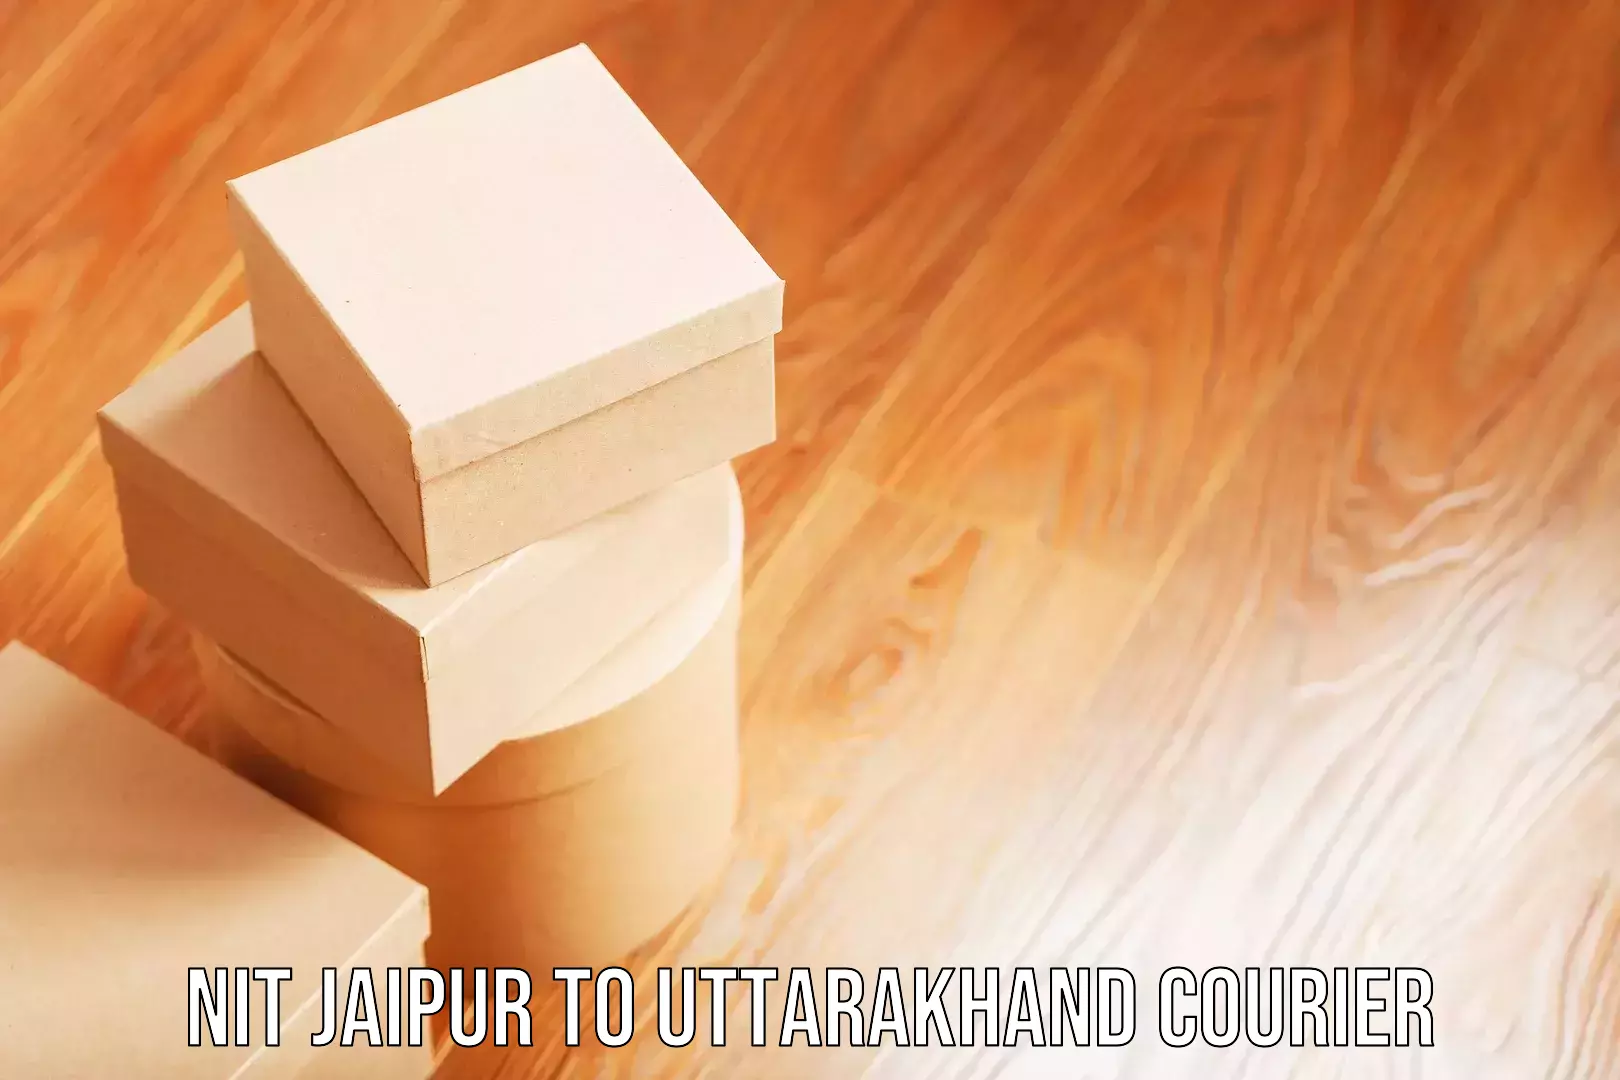 Luggage shipment processing NIT Jaipur to Uttarkashi